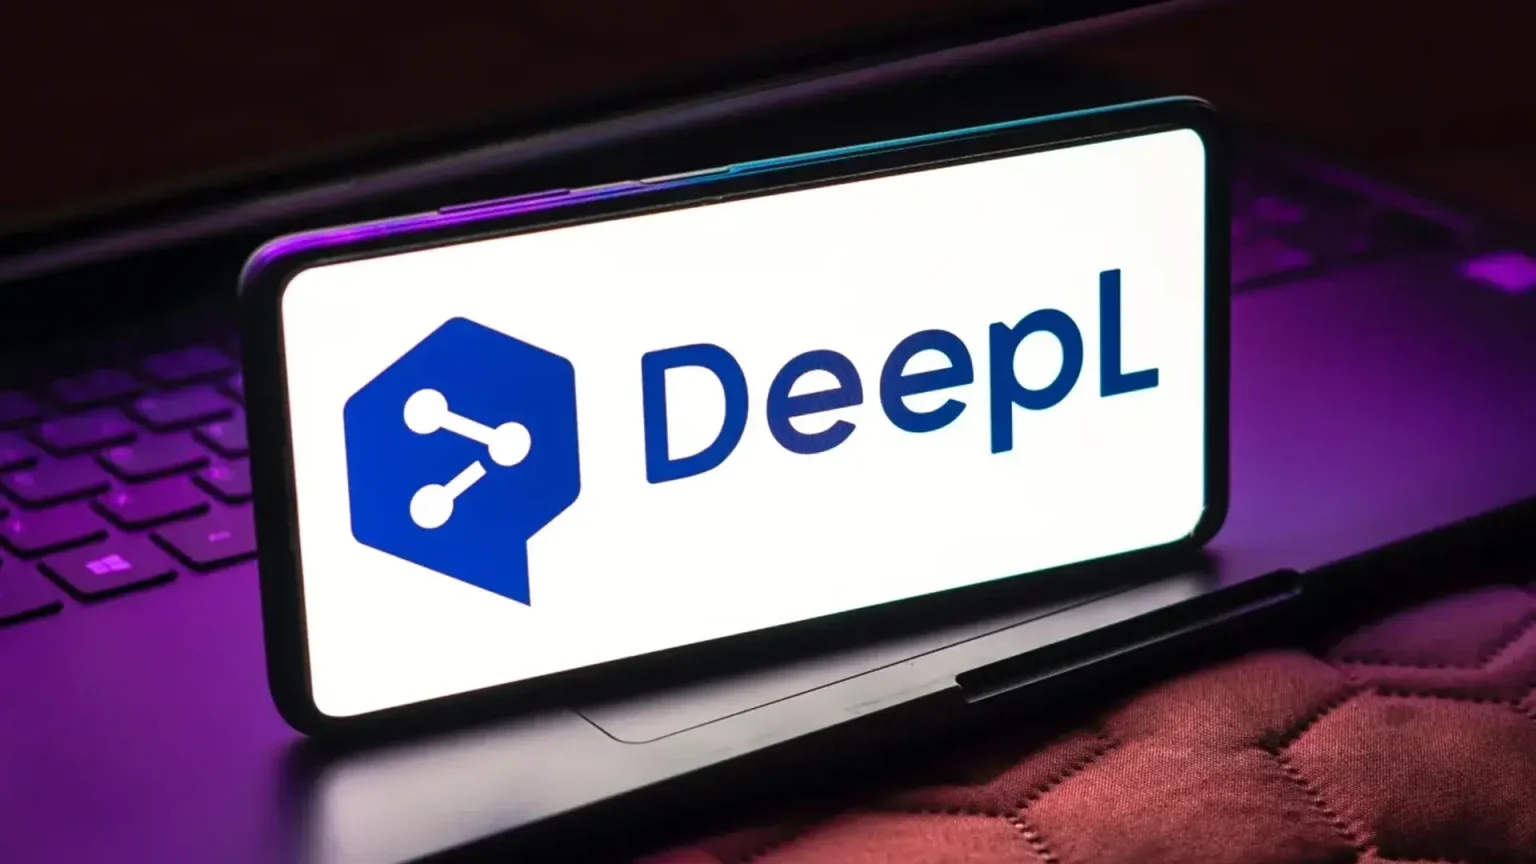 Yapay zeka destekli çeviri platformu DeepL, 300 milyon dolar yatırım aldı